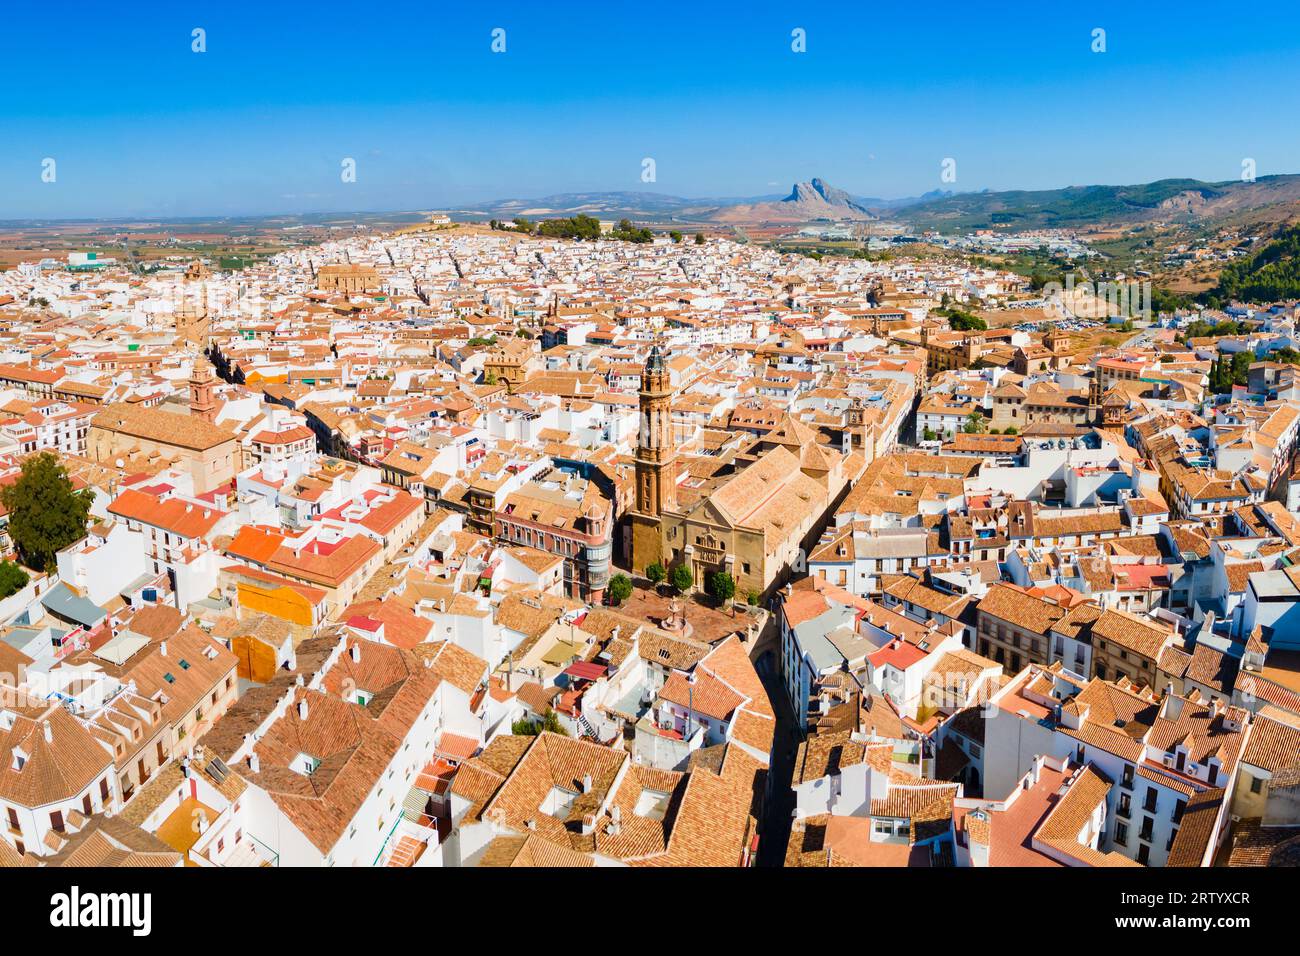 Vista panoramica aerea della chiesa parrocchiale di San Sebastiano a Antequera. Antequera è una città della provincia di Malaga, la comunità dell'Andalusia in Spagna. Foto Stock